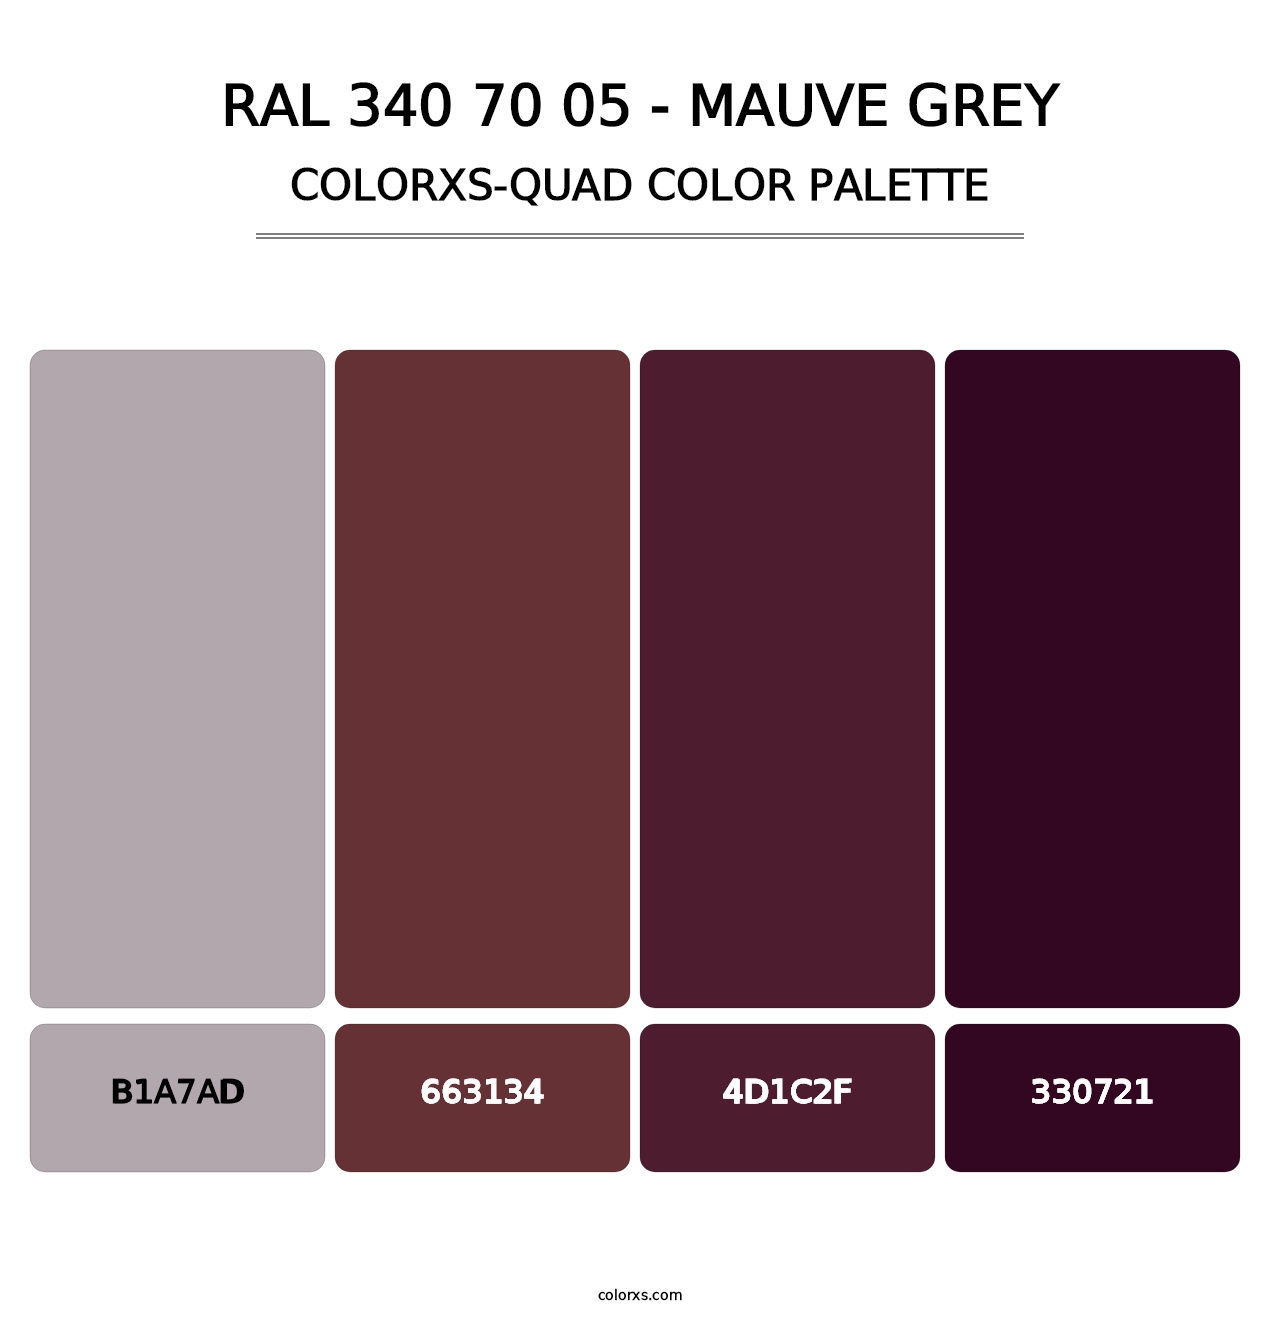 RAL 340 70 05 - Mauve Grey - Colorxs Quad Palette